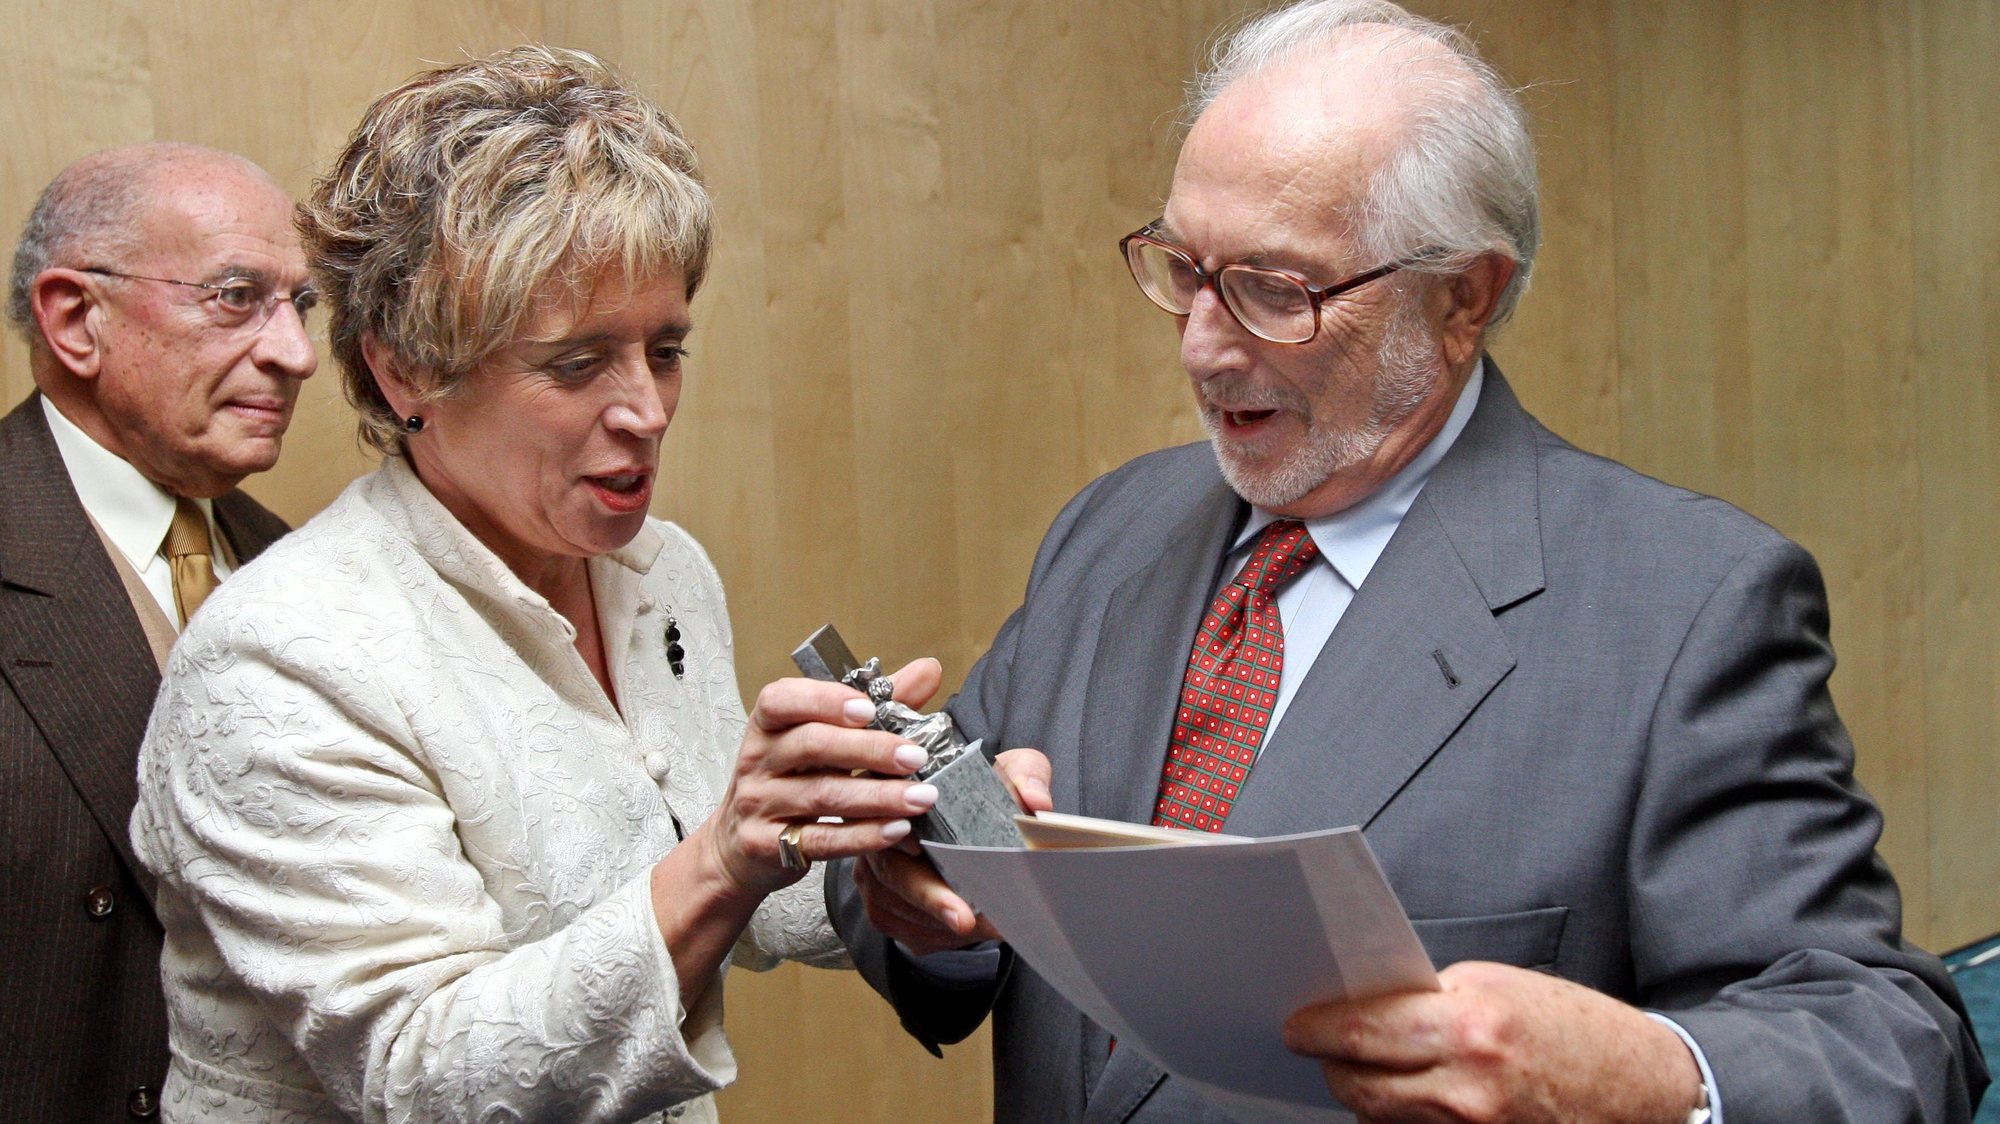 A Ministra da Cultura, Isabel Pires de Lima, entrega o prémio literário Inês de Castro ao escritor Pedro Tamen, no Hotel Quinta das Lágrimas, em Coimbra, 12 de Janeiro de 2008. LUSA/PAULO NOVAIS